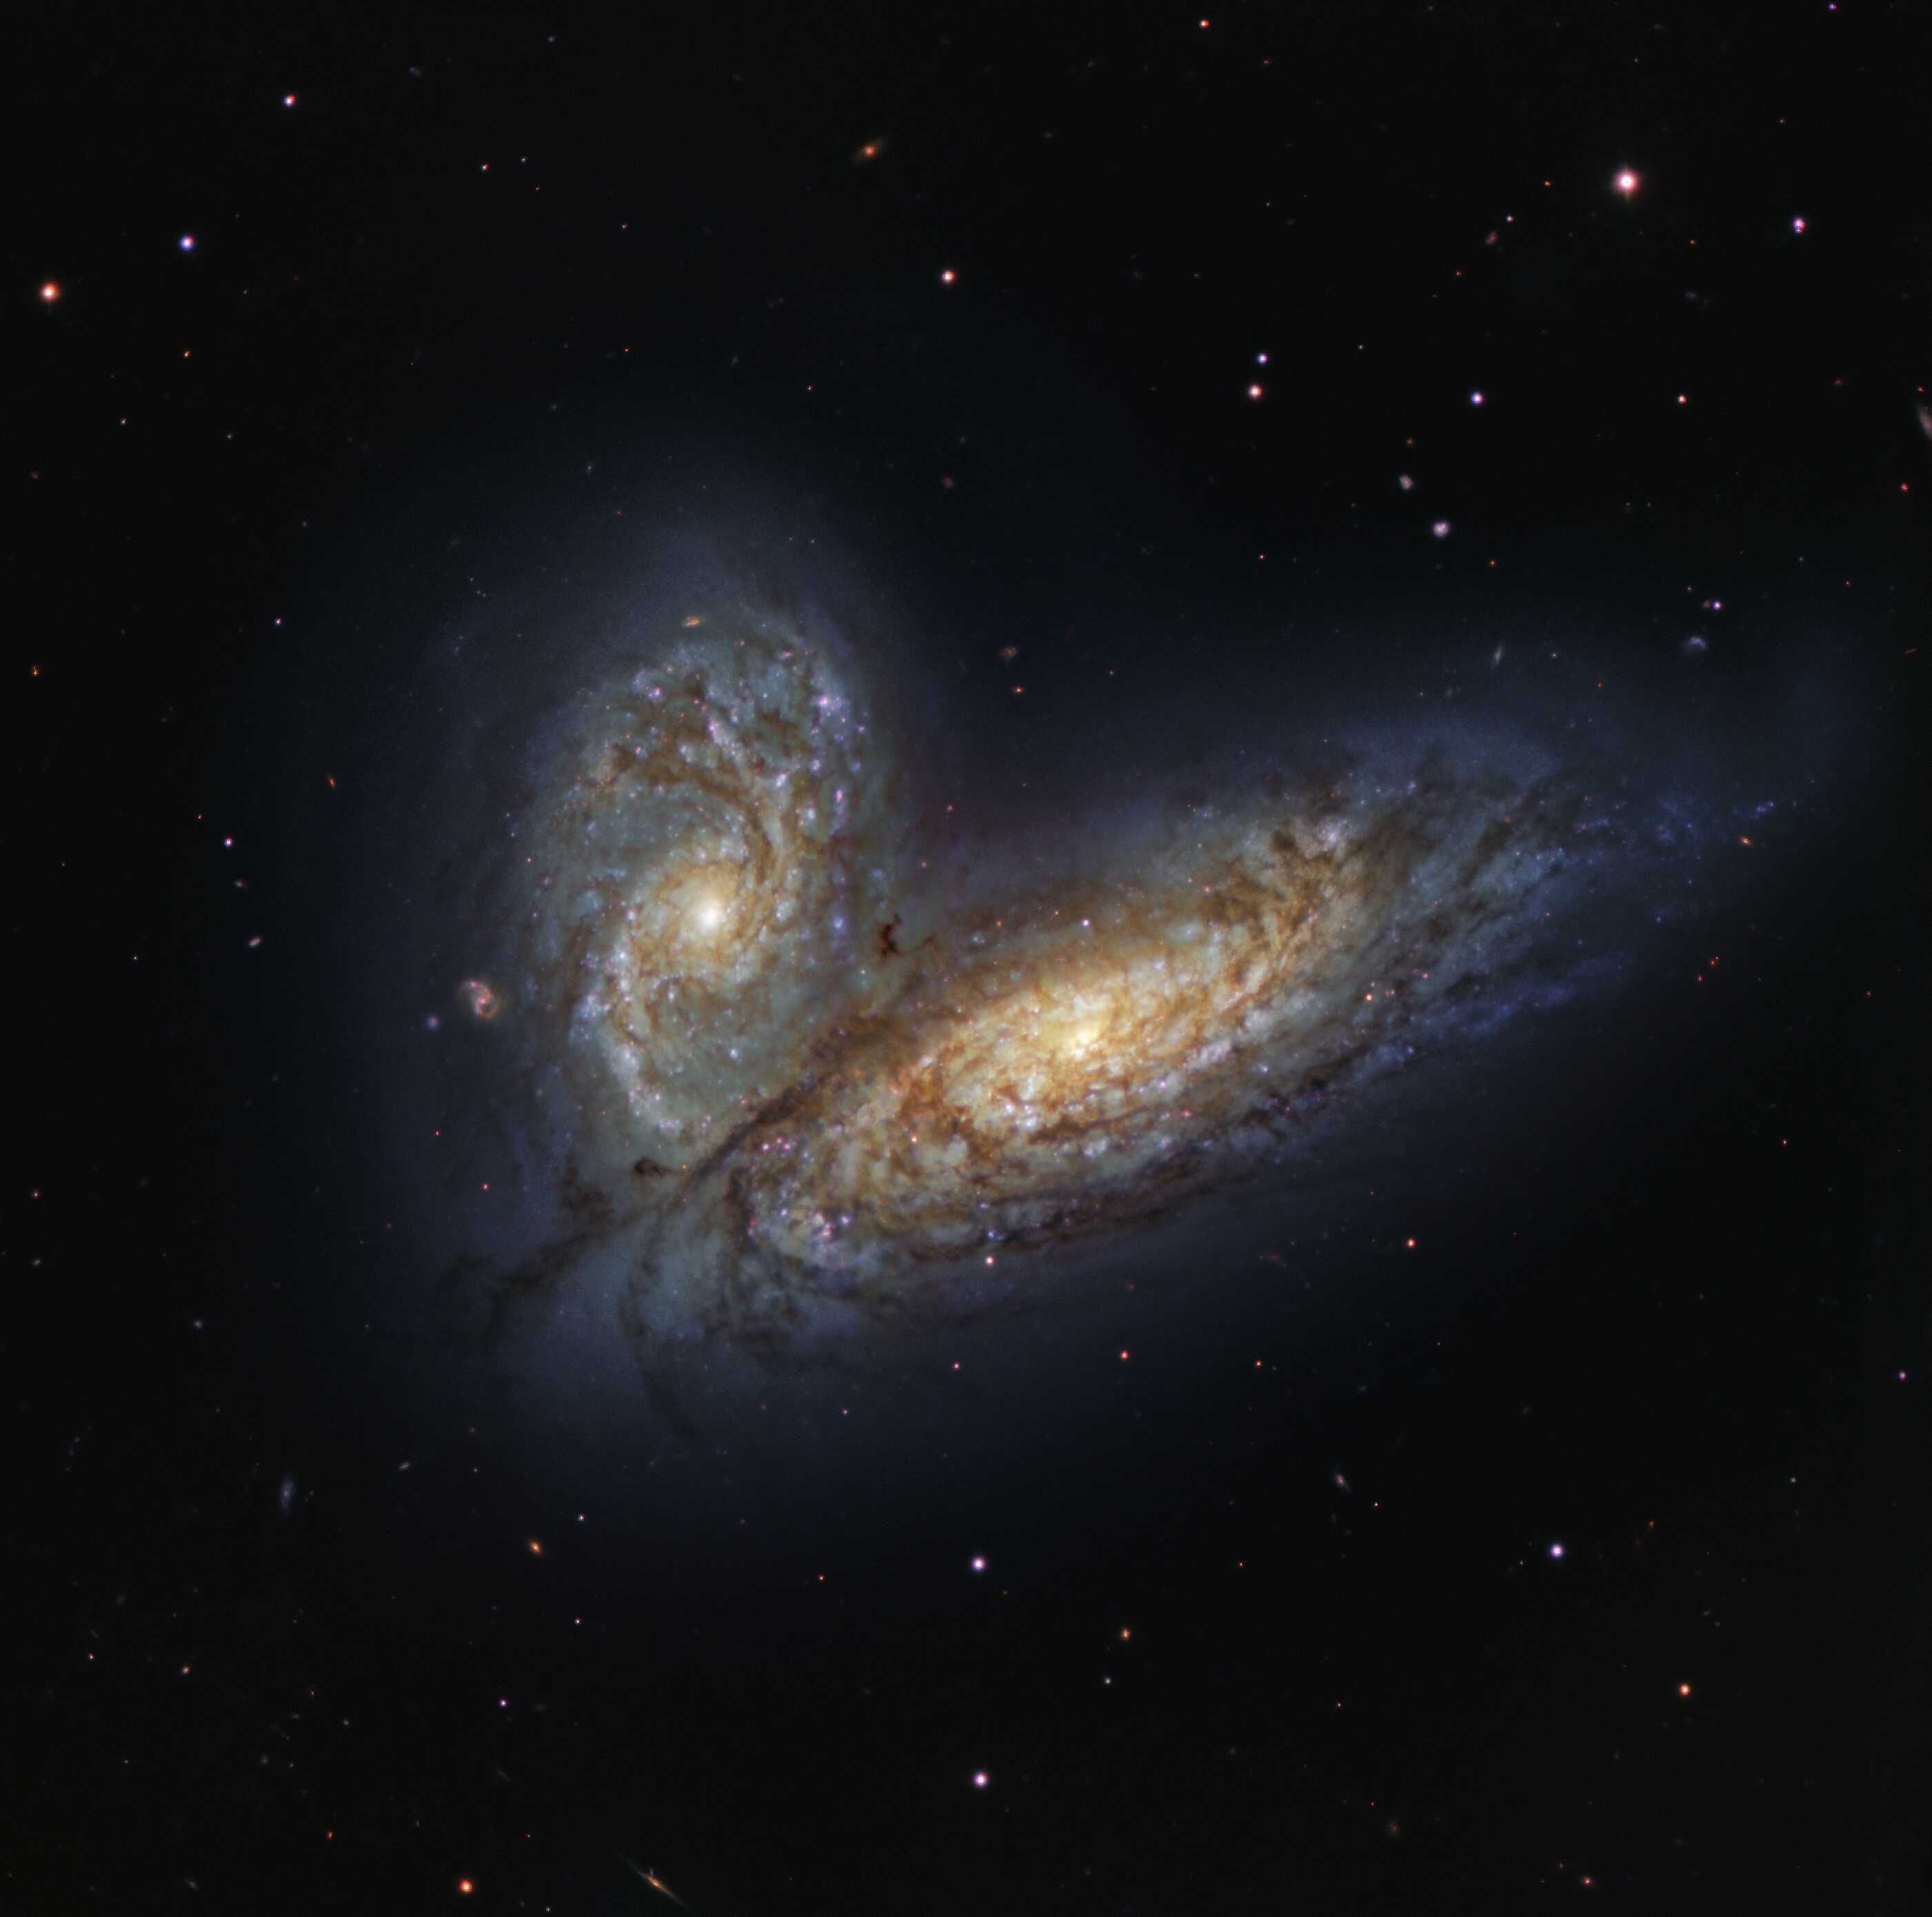 Телескоп Gemini North сделал захватывающее изображение столкновения галактик NGC4568 и NGC4567